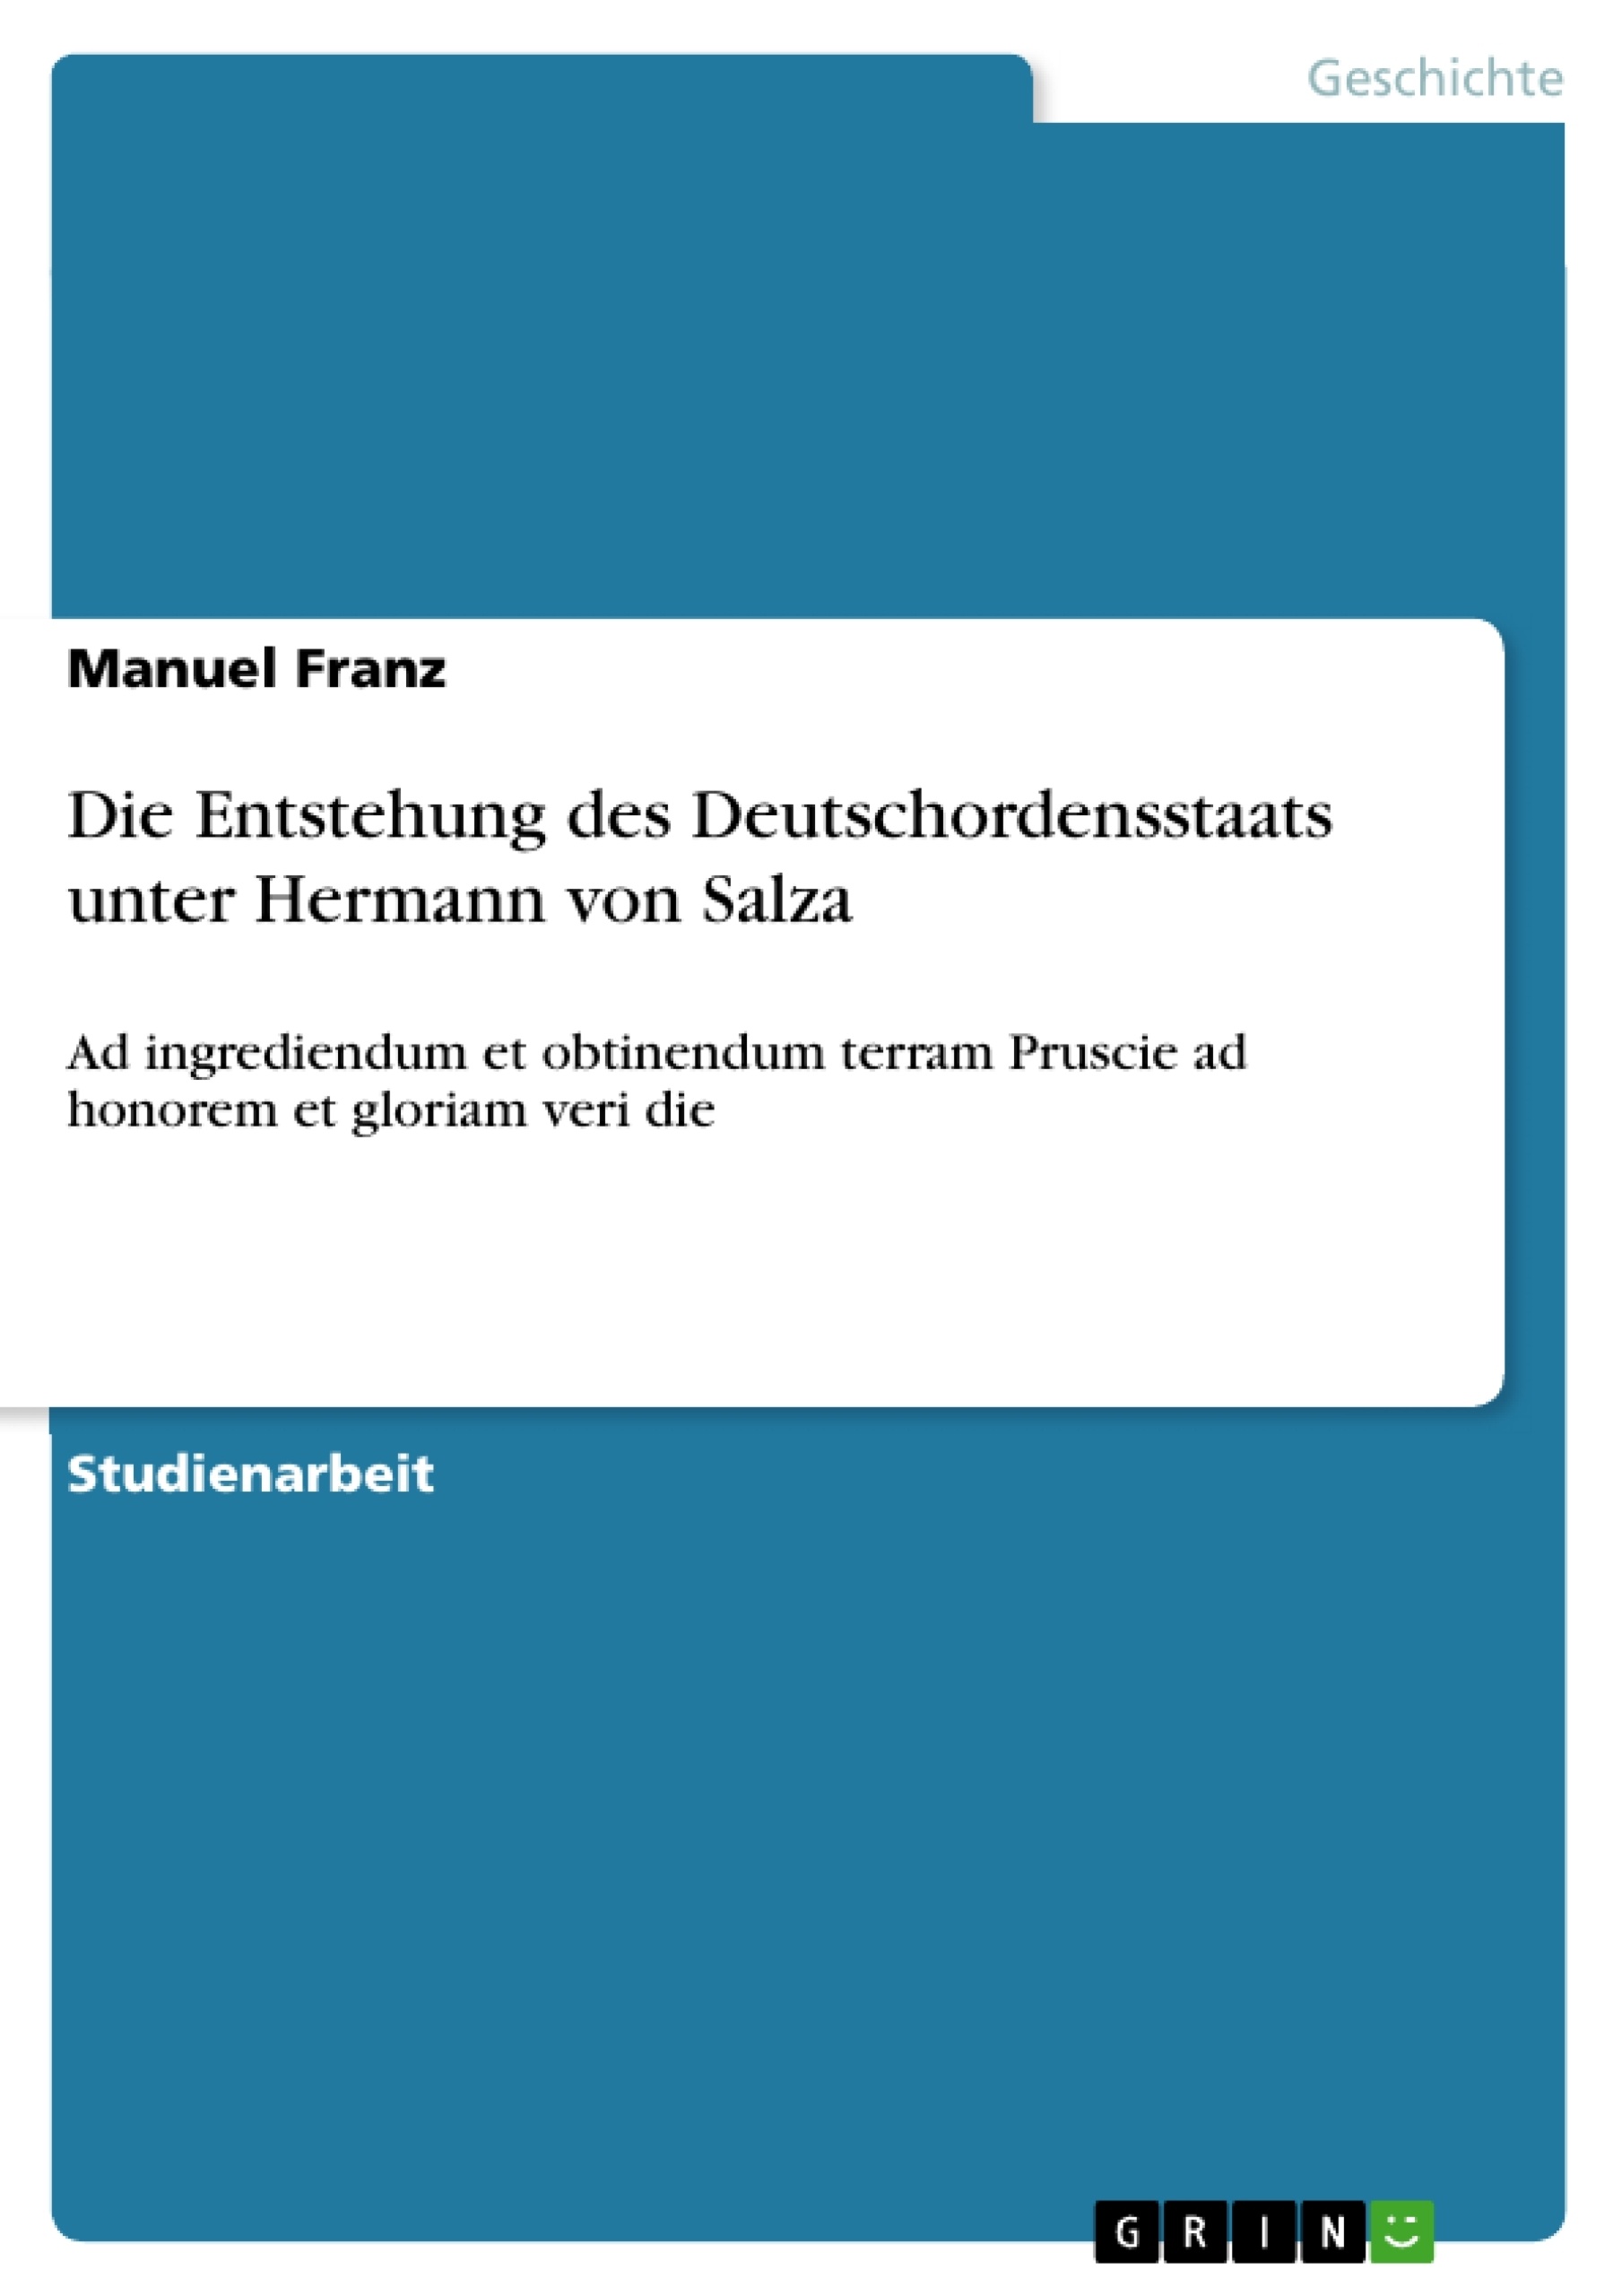 Titel: Die Entstehung des Deutschordensstaats unter Hermann von Salza 